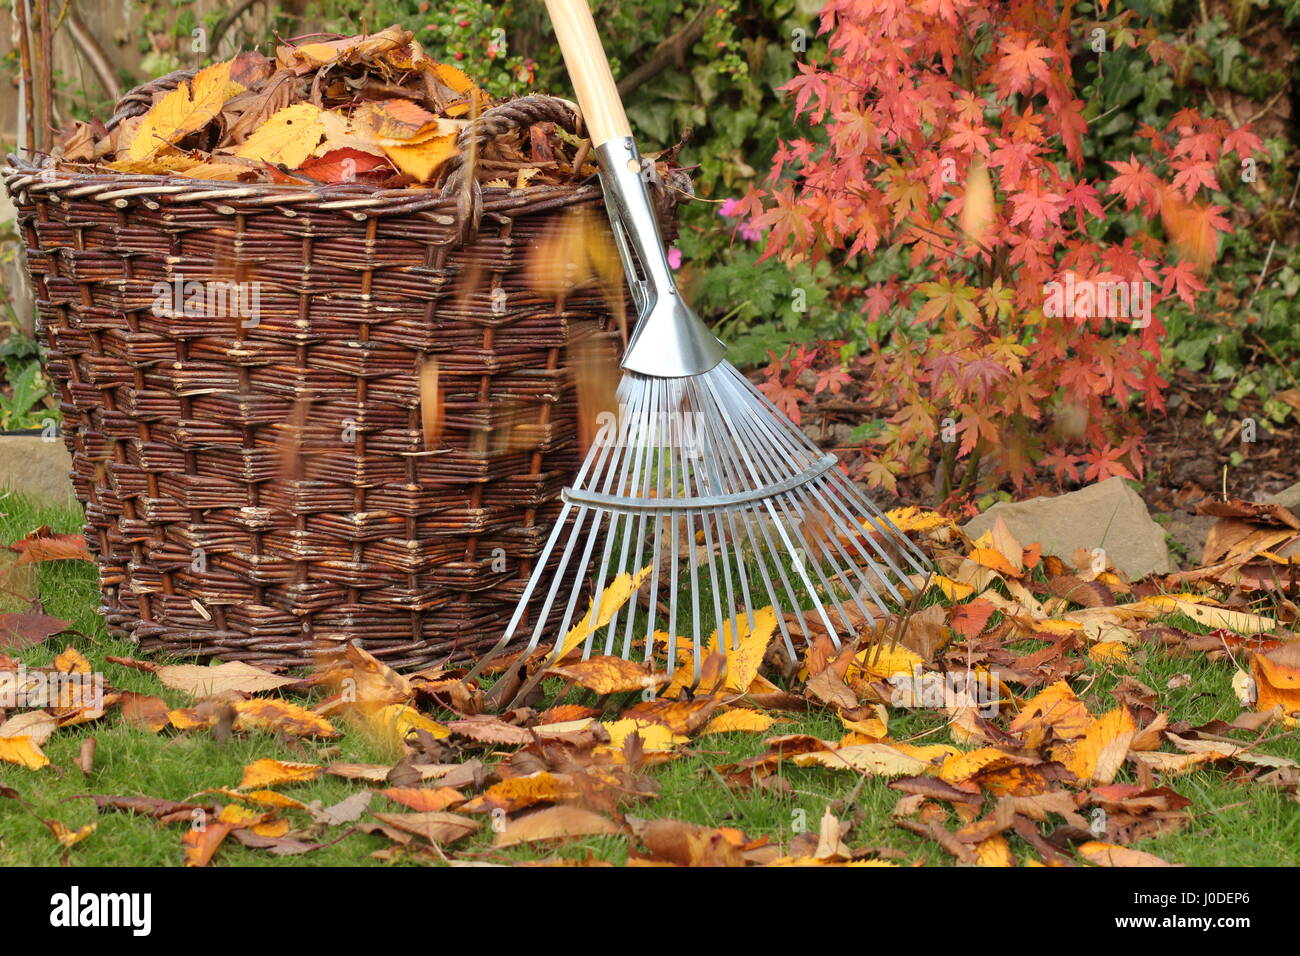 Hojas caídas despejadas de un césped de jardín en una cesta tejida en un brillante día de otoño, Reino Unido Foto de stock